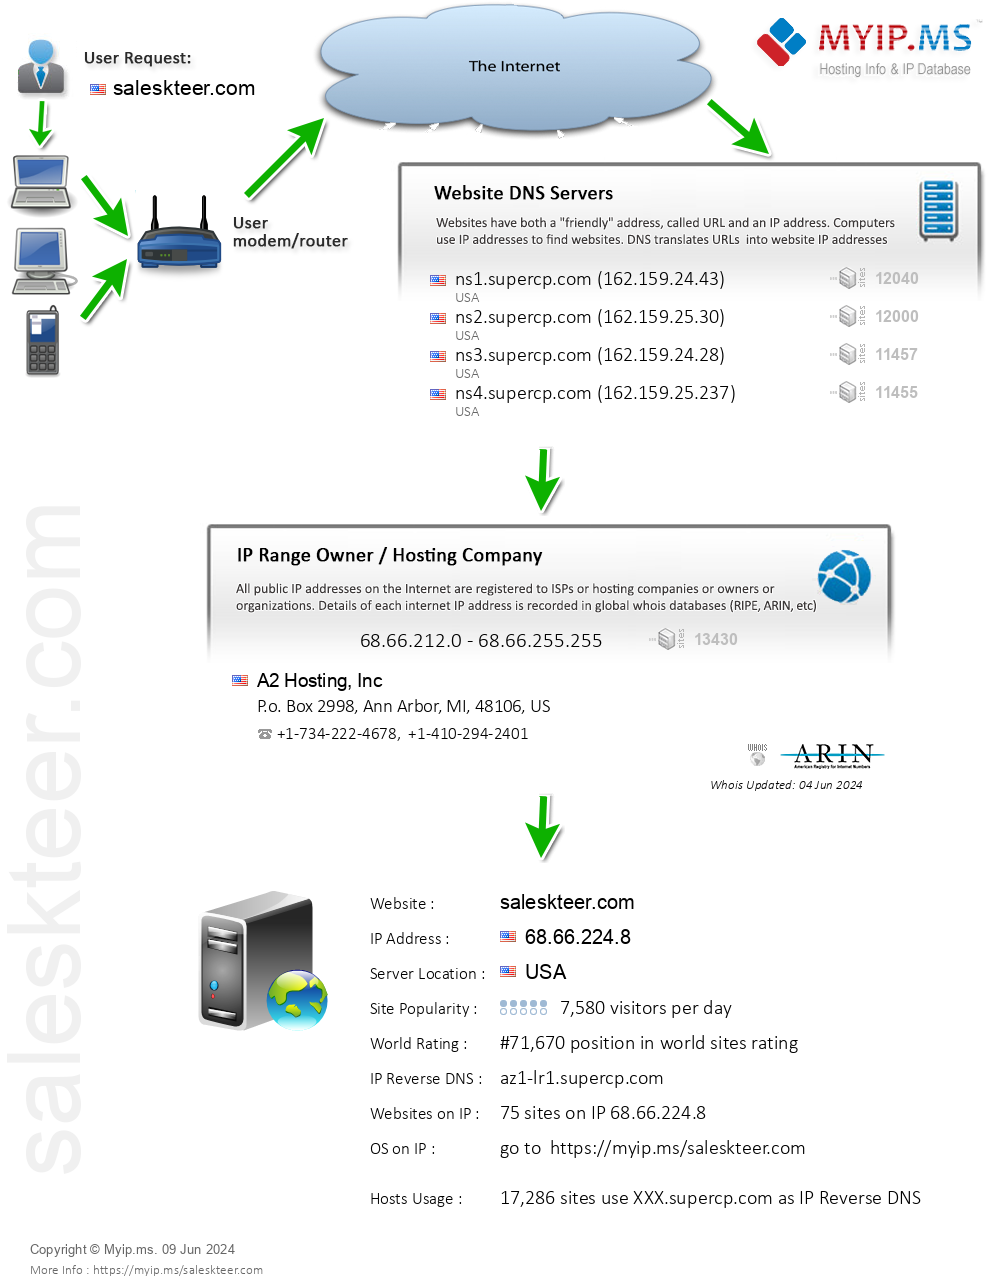 Saleskteer.com - Website Hosting Visual IP Diagram